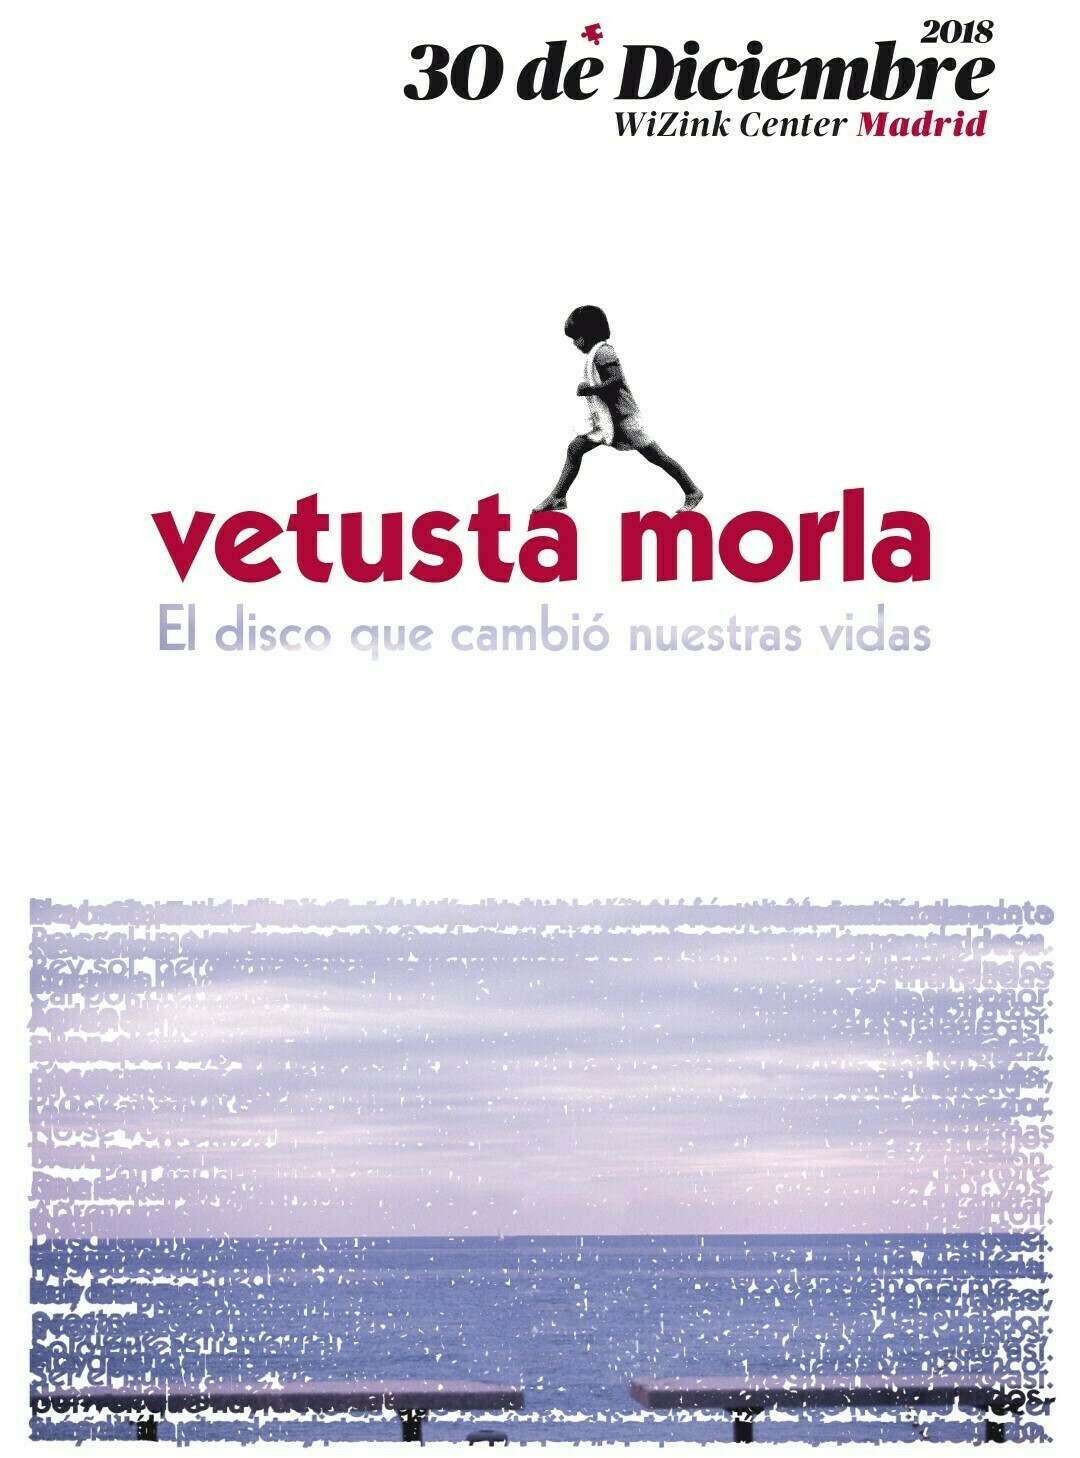 ‘El Disco Que Cambió Nuestras Vidas’, la propuesta artística de Vetusta Morla